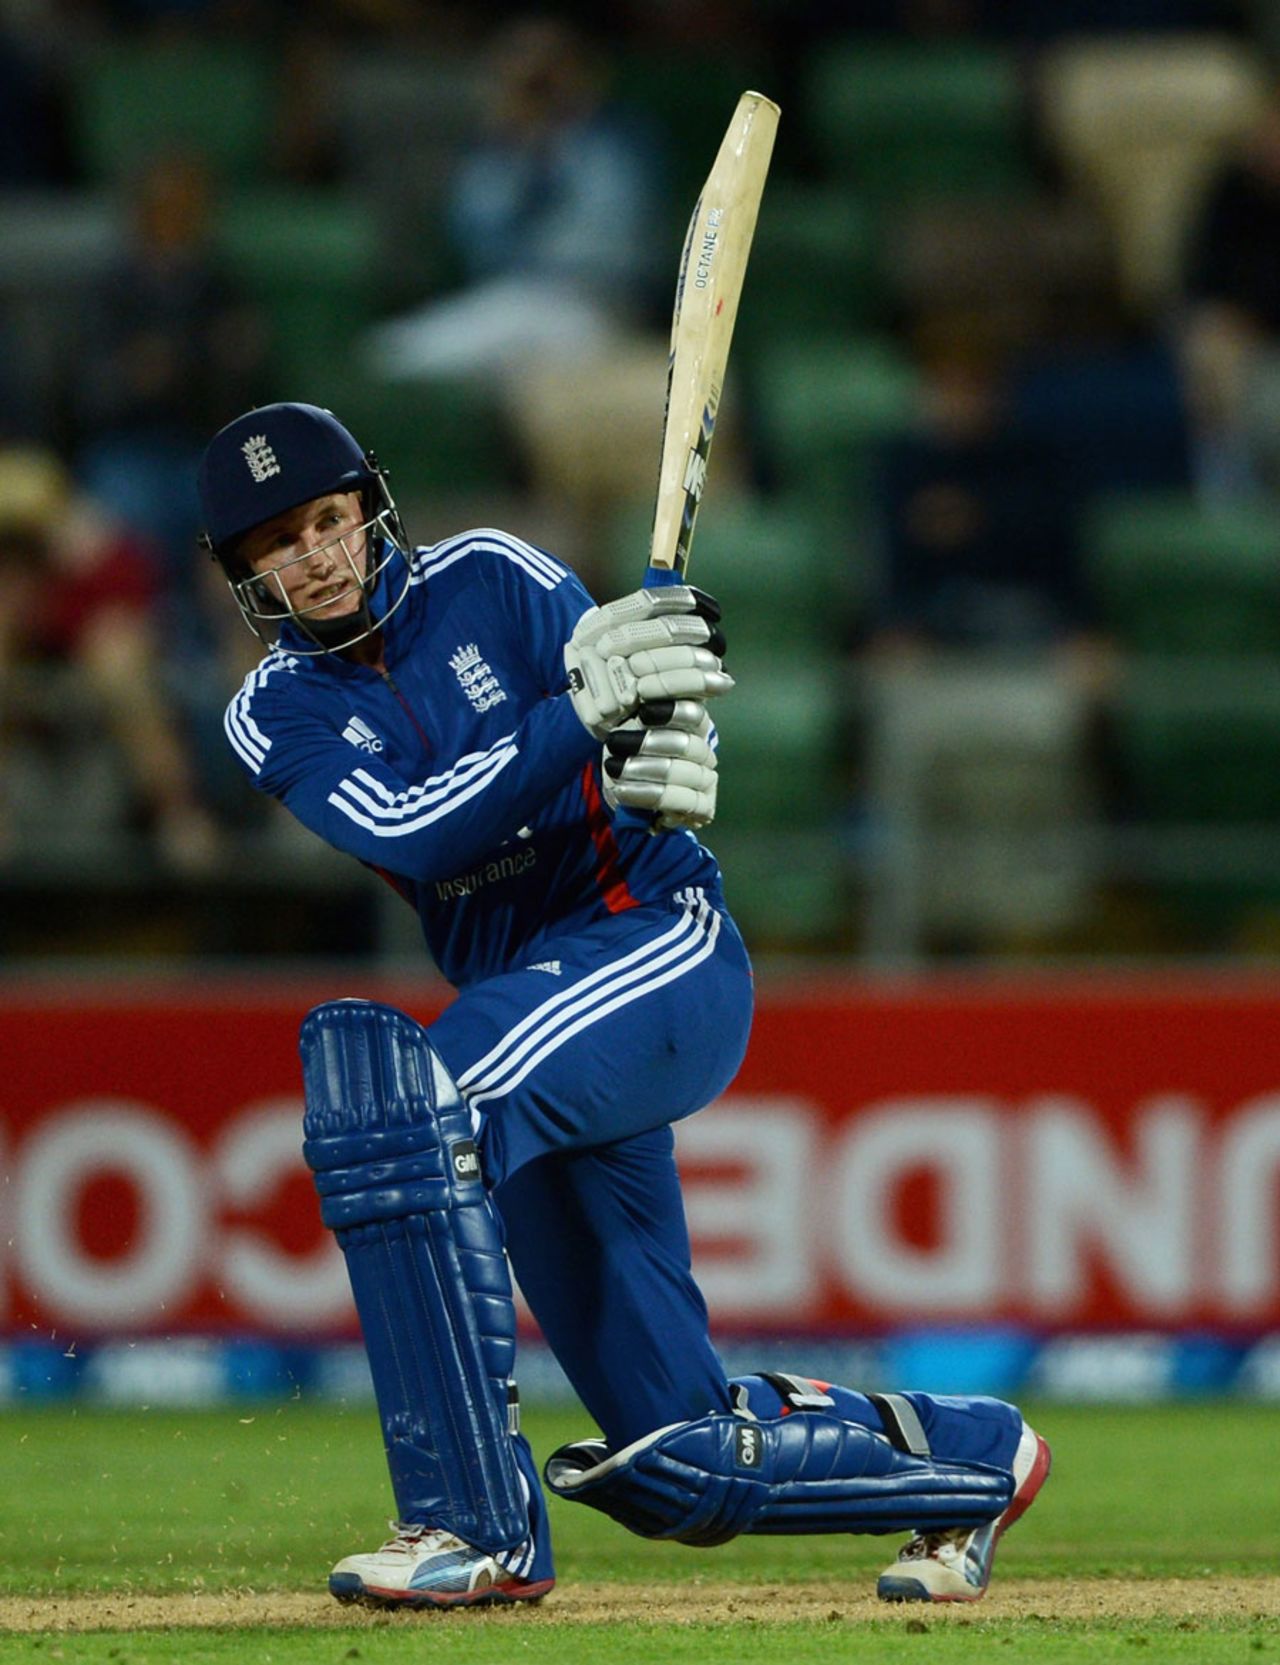 Joe Root made an unbeaten 79, New Zealand v England, 2nd ODI, Napier, February 20, 2013